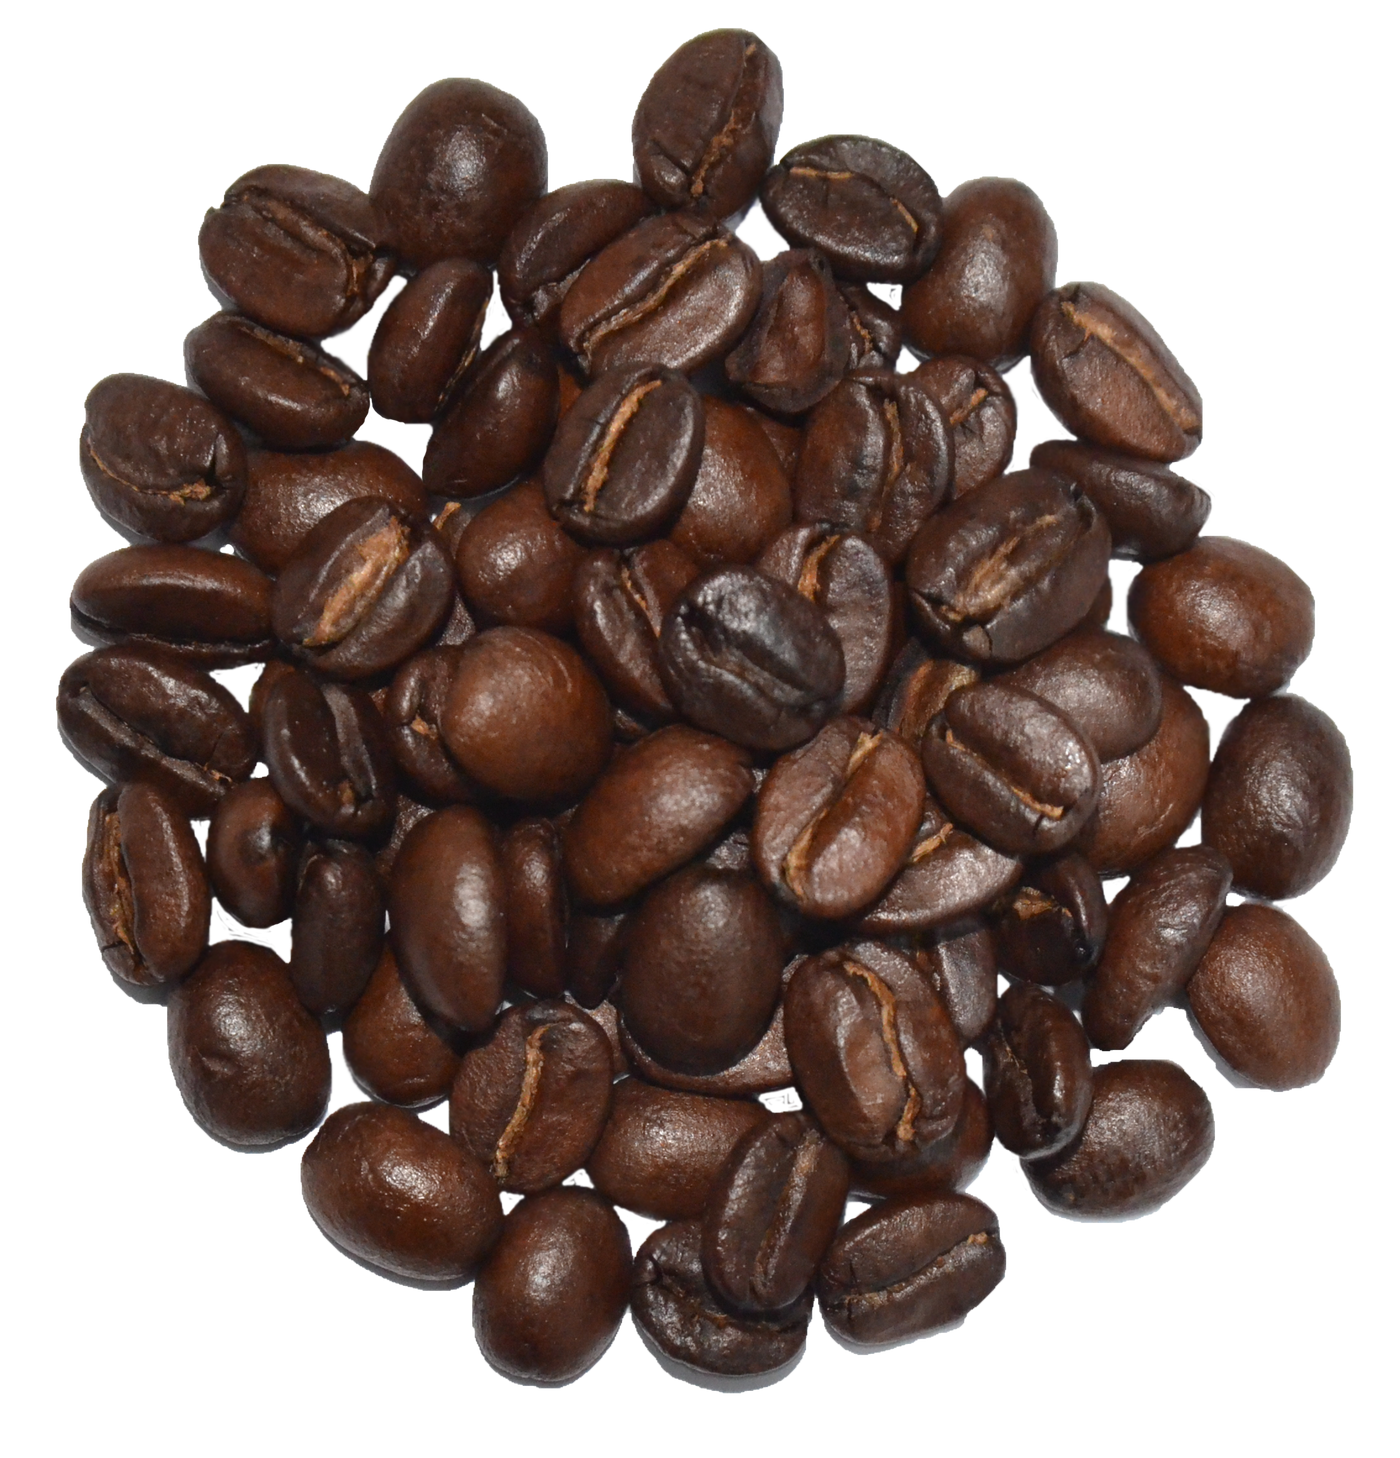 Monsoon Malabar AAA Roasted Coffee / Beans